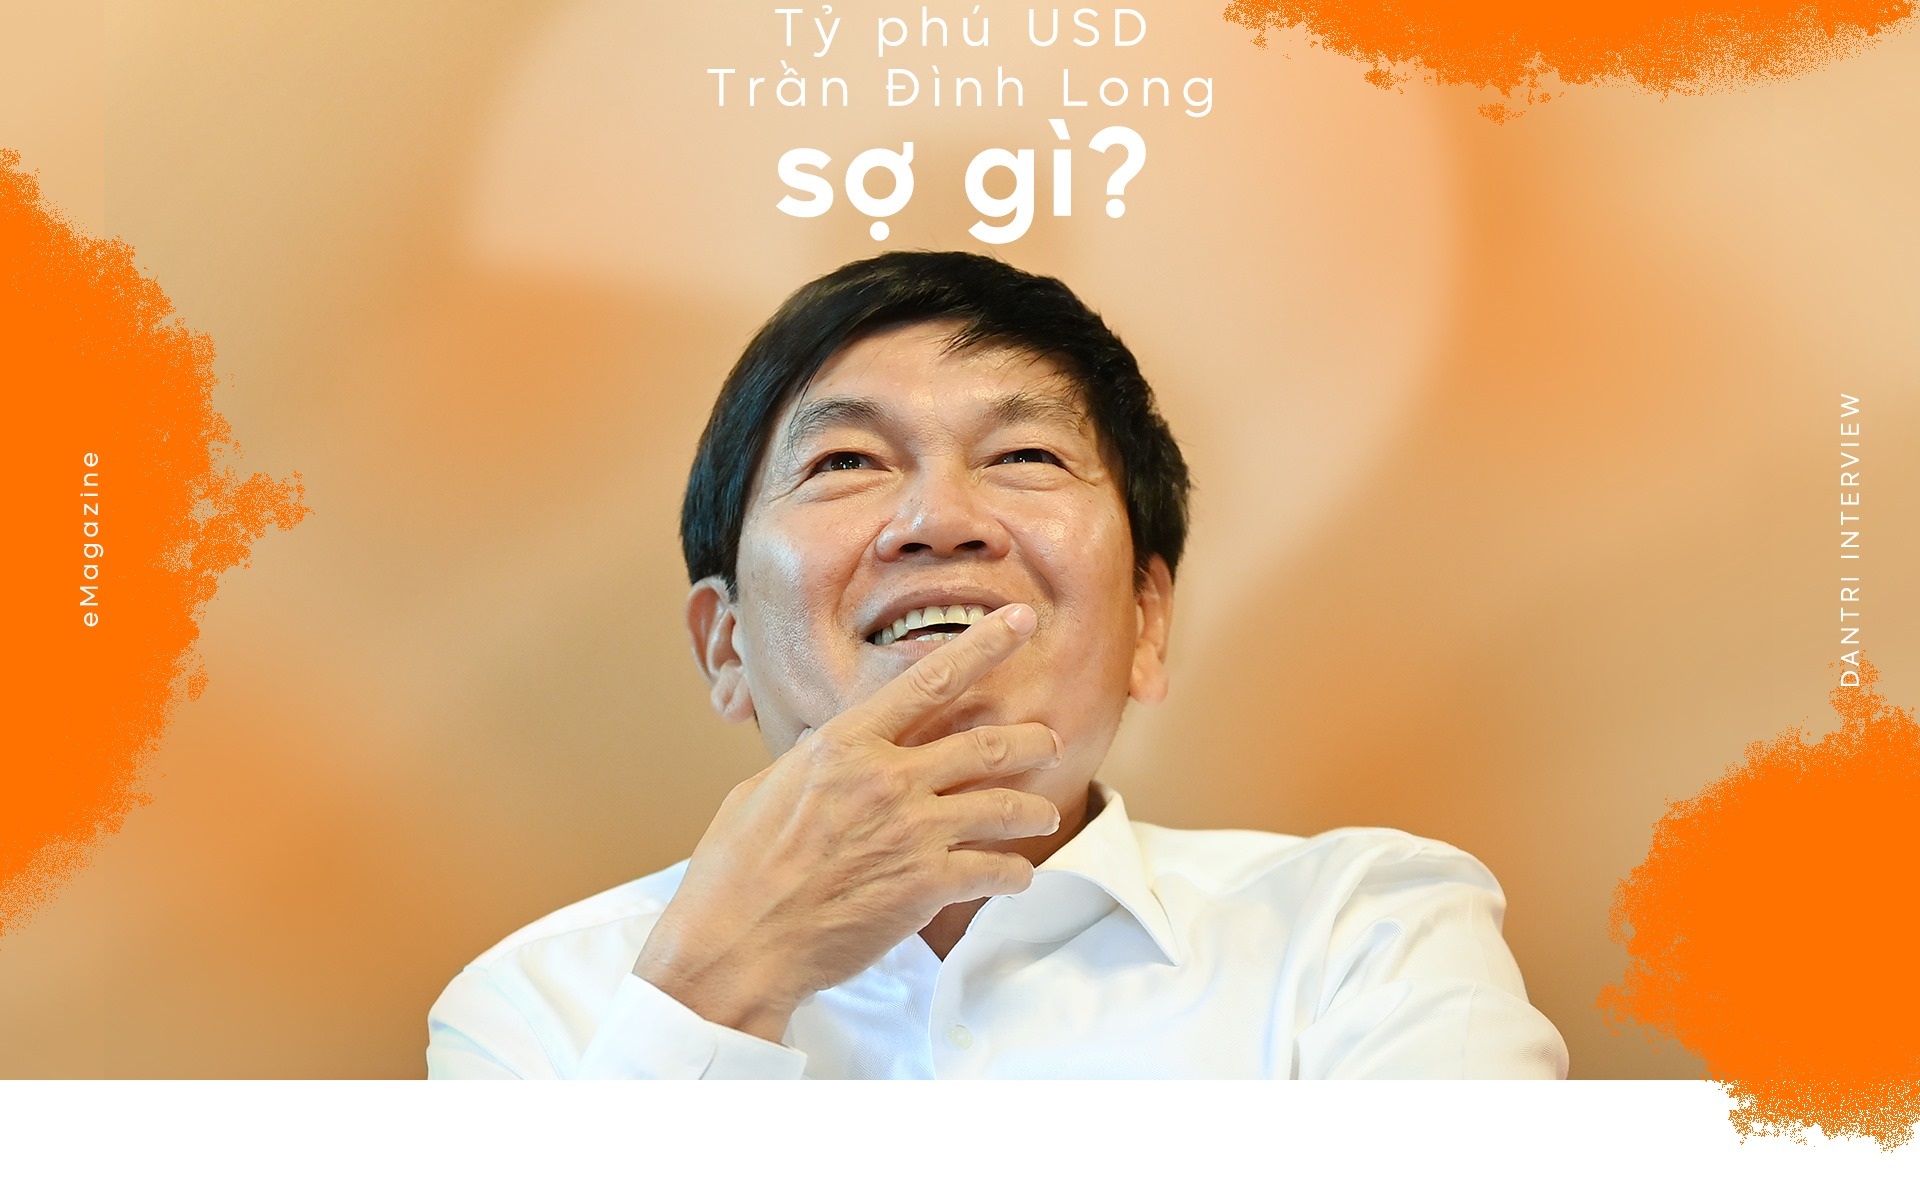 Tỷ phú đô la Trần Đình Long sợ gì?